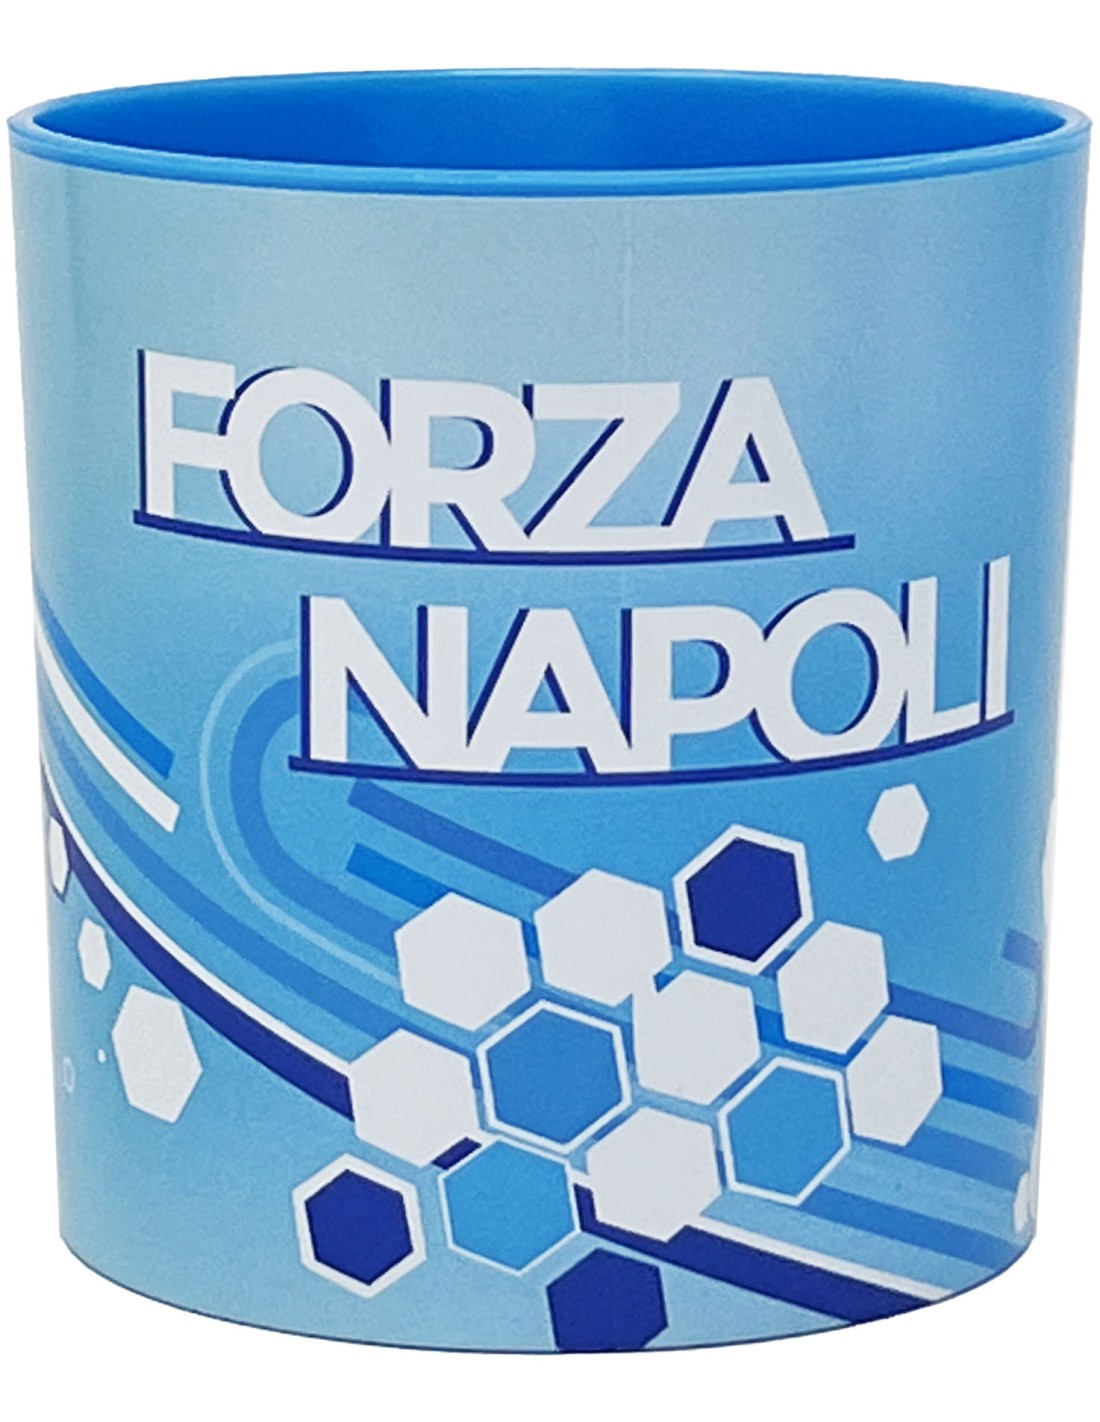 Forza Napoli - Tazza in plastica 350ml per bambini, Bpa free